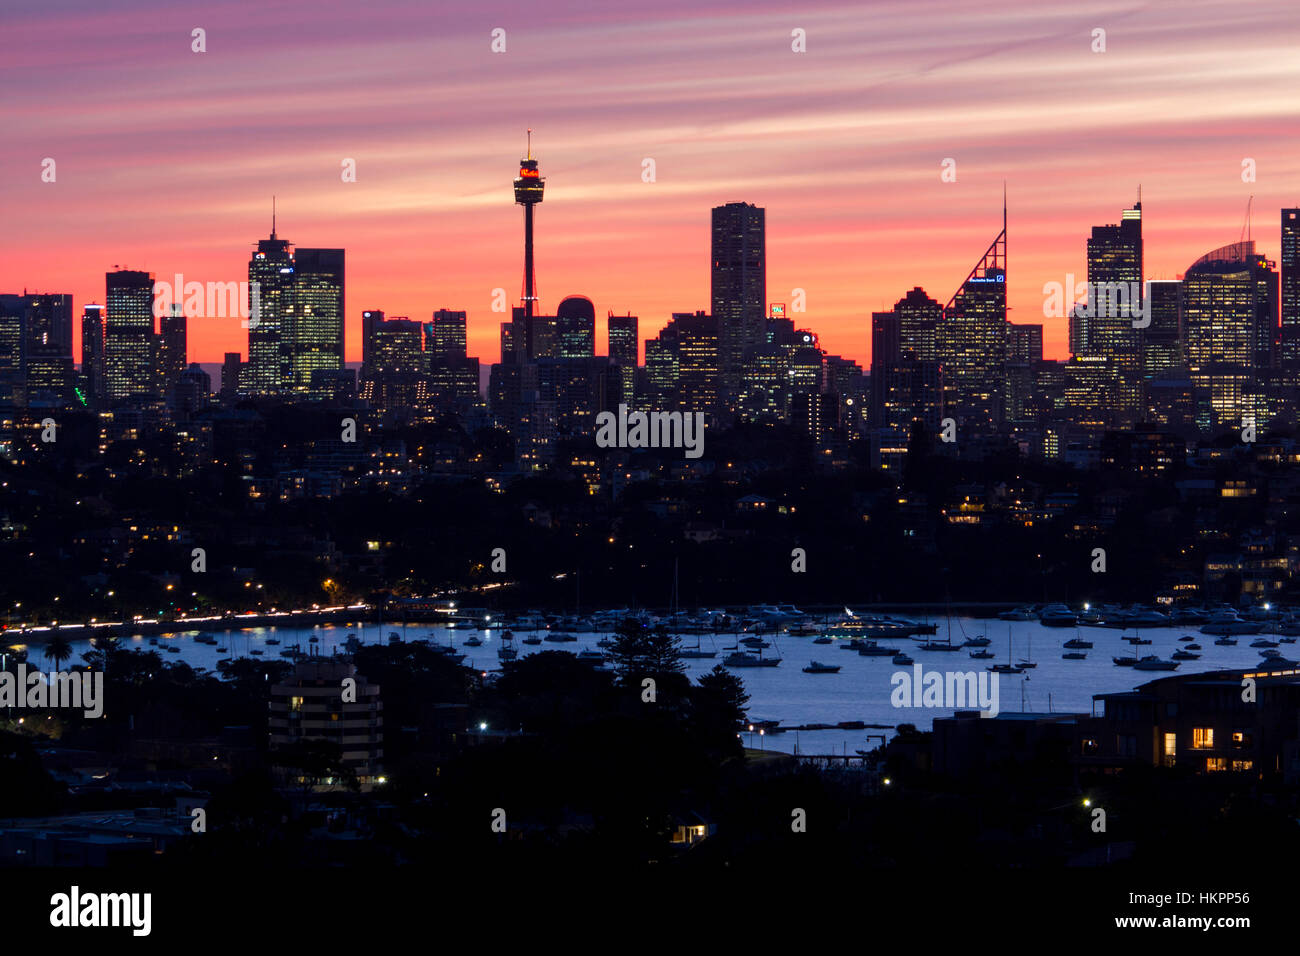 El horizonte de la ciudad de Sydney en la noche con rascacielos y el centro comercial Westfield Sydney Tower, con Rose Bay en primer plano Sydney NSW, Australia Foto de stock